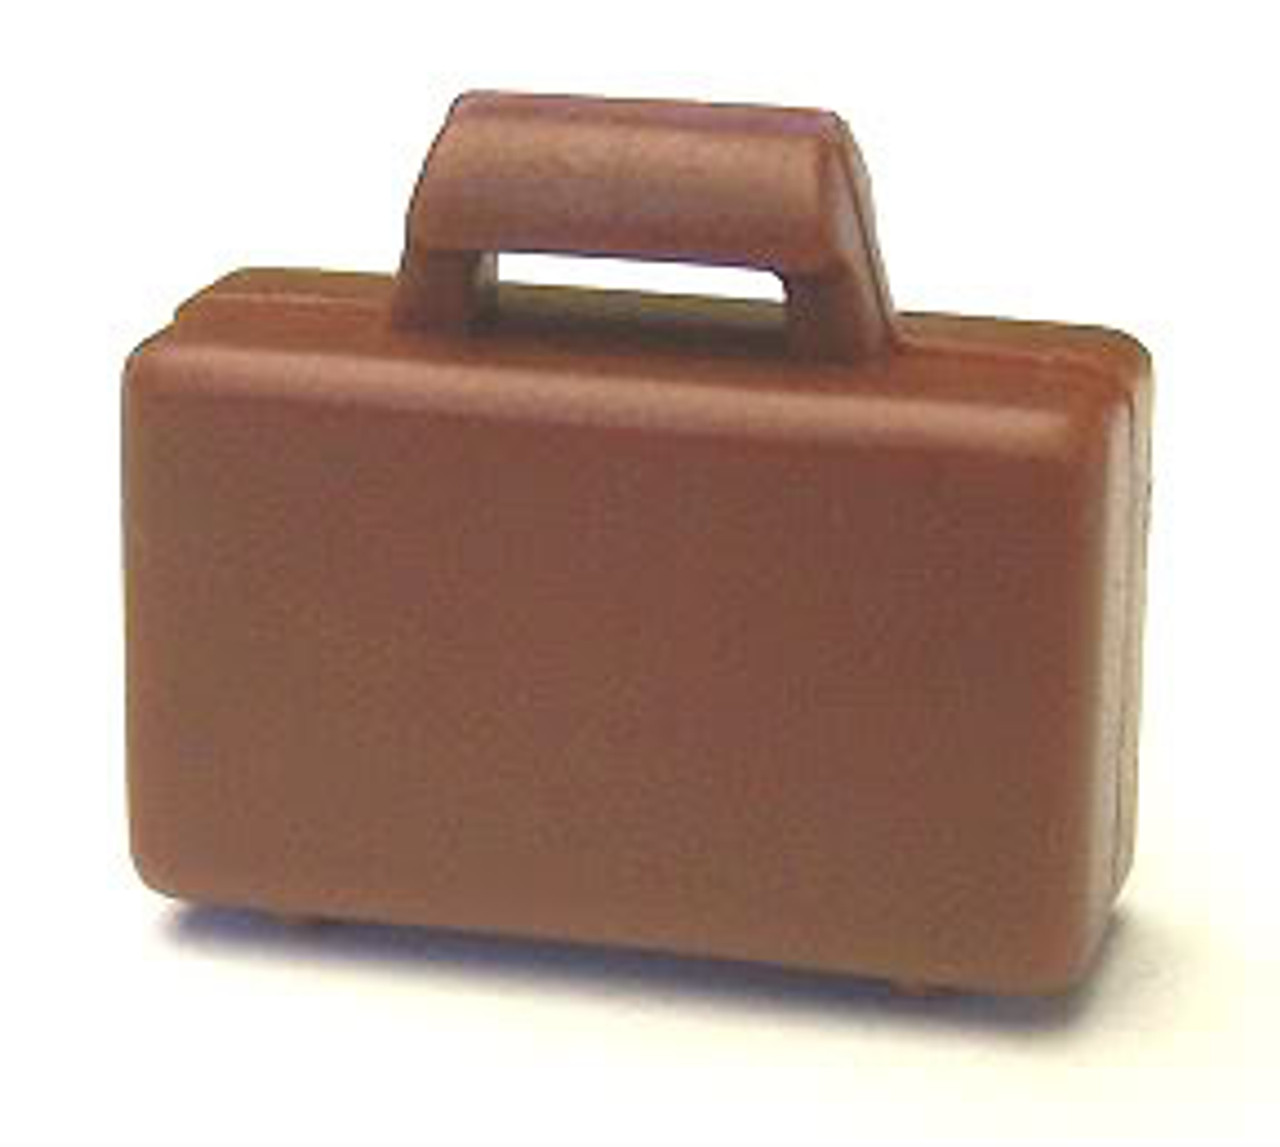 lego suitcase piece